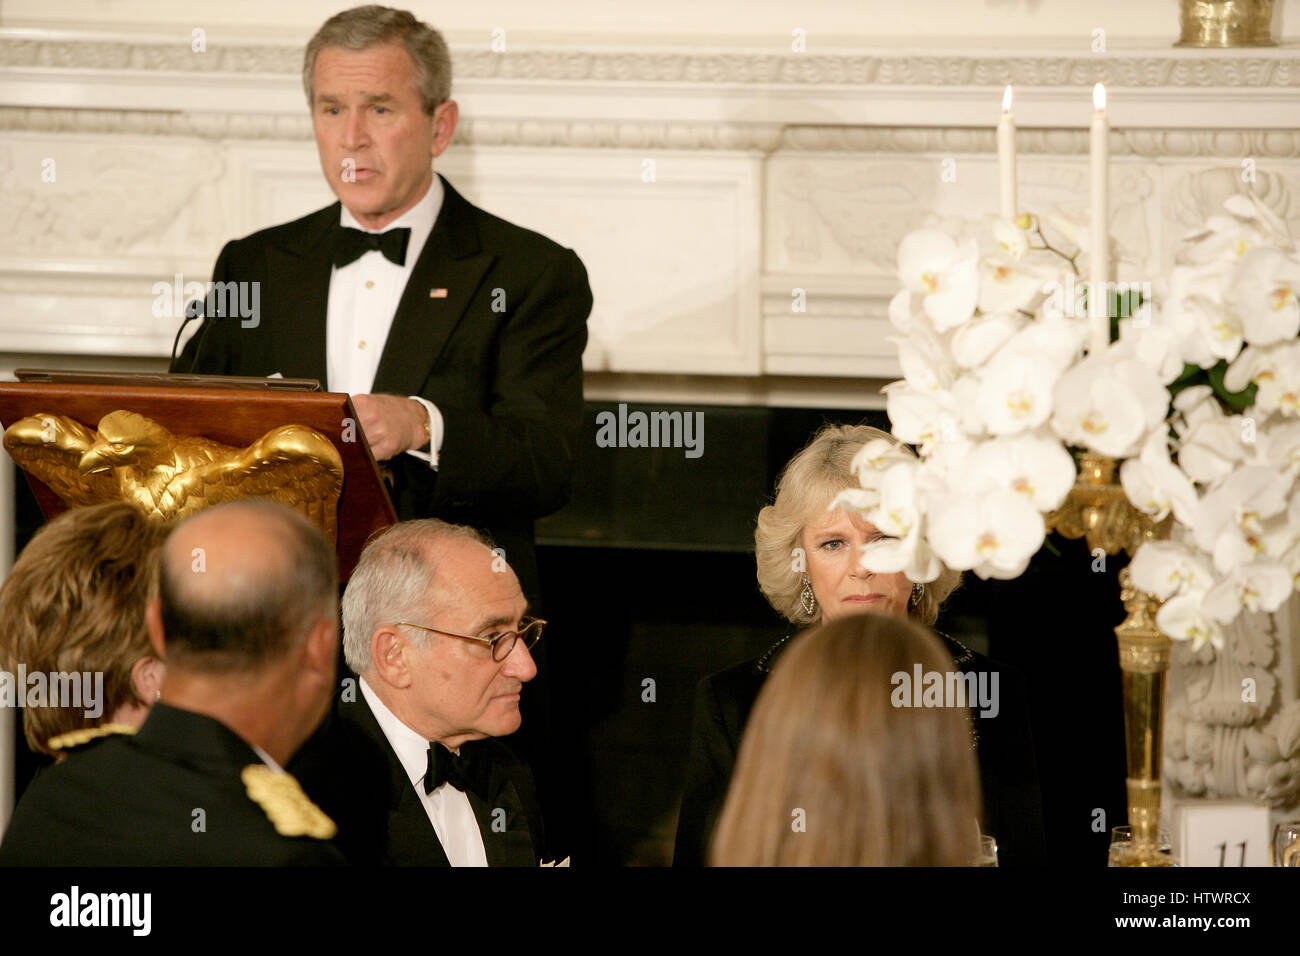 Washington, D.C - 2. November 2005--bietet einen Toast als Camilla, Herzogin von Cornwall, Vereinigtes Königreich, Vereinigte Staaten Präsident George w. Bush, links, rechts, bei einem gemeinsamen Abendessen im Weißen Haus in Washington, D.C. am 2. November 2005 hört Großbritanniens Stockfoto